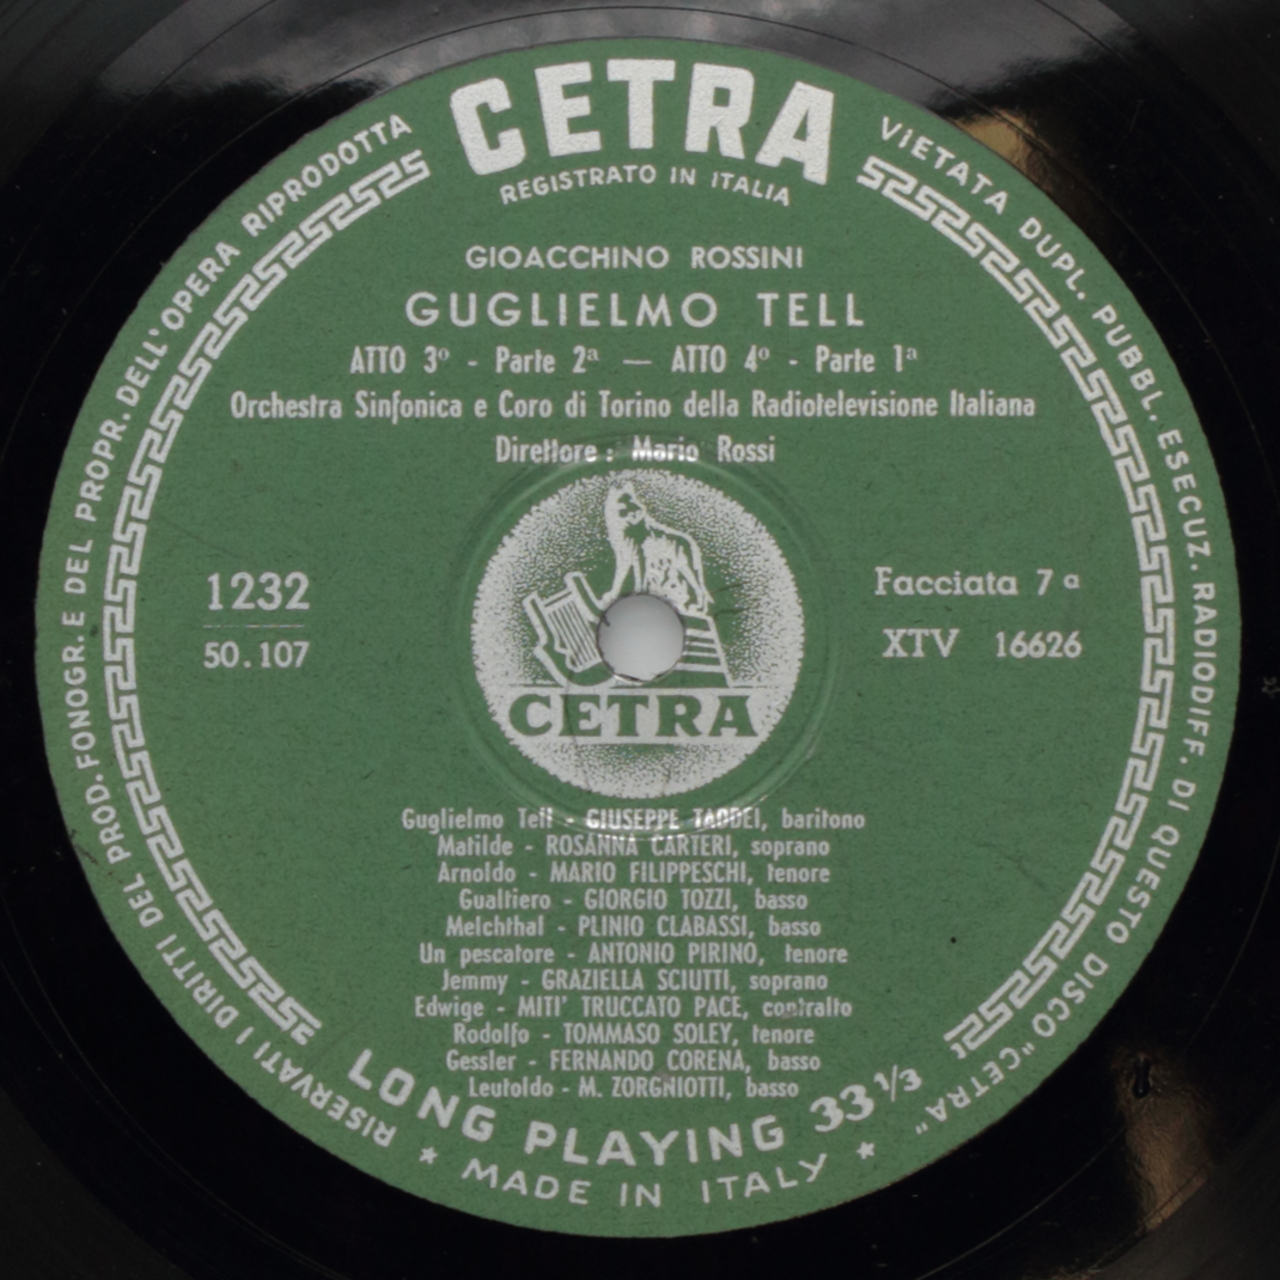 Rossini: Gugliemo Tell